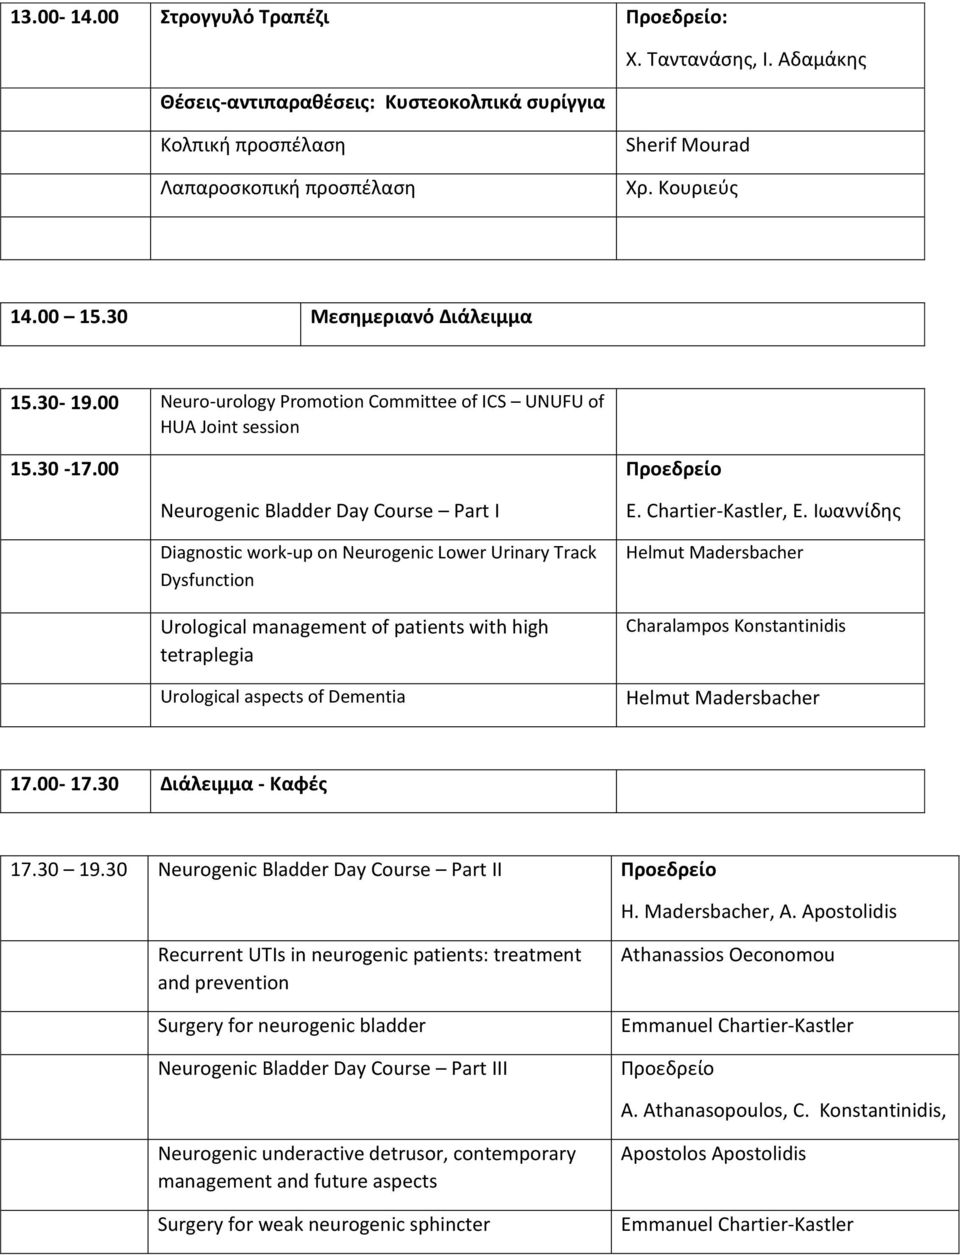 00 Προεδρείο Neurogenic Bladder Day Course Part I Diagnostic work-up on Neurogenic Lower Urinary Track Dysfunction Urological management of patients with high tetraplegia Urological aspects of